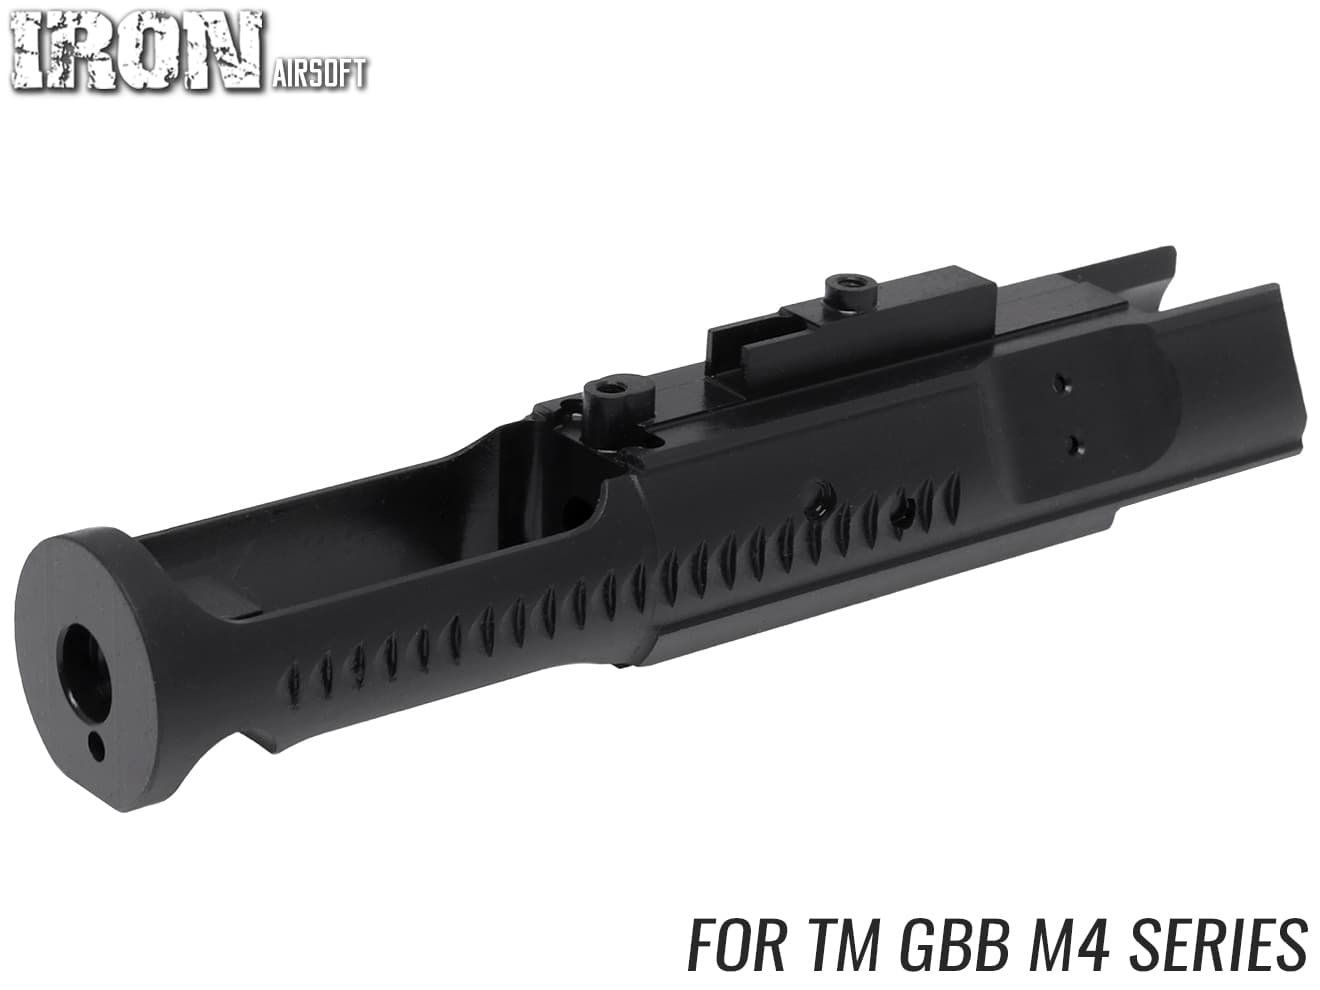 TMB-GSP-003B　TMB スチールCNC ボルトキャリア w/ アルミボルトB for マルイ GBB M4